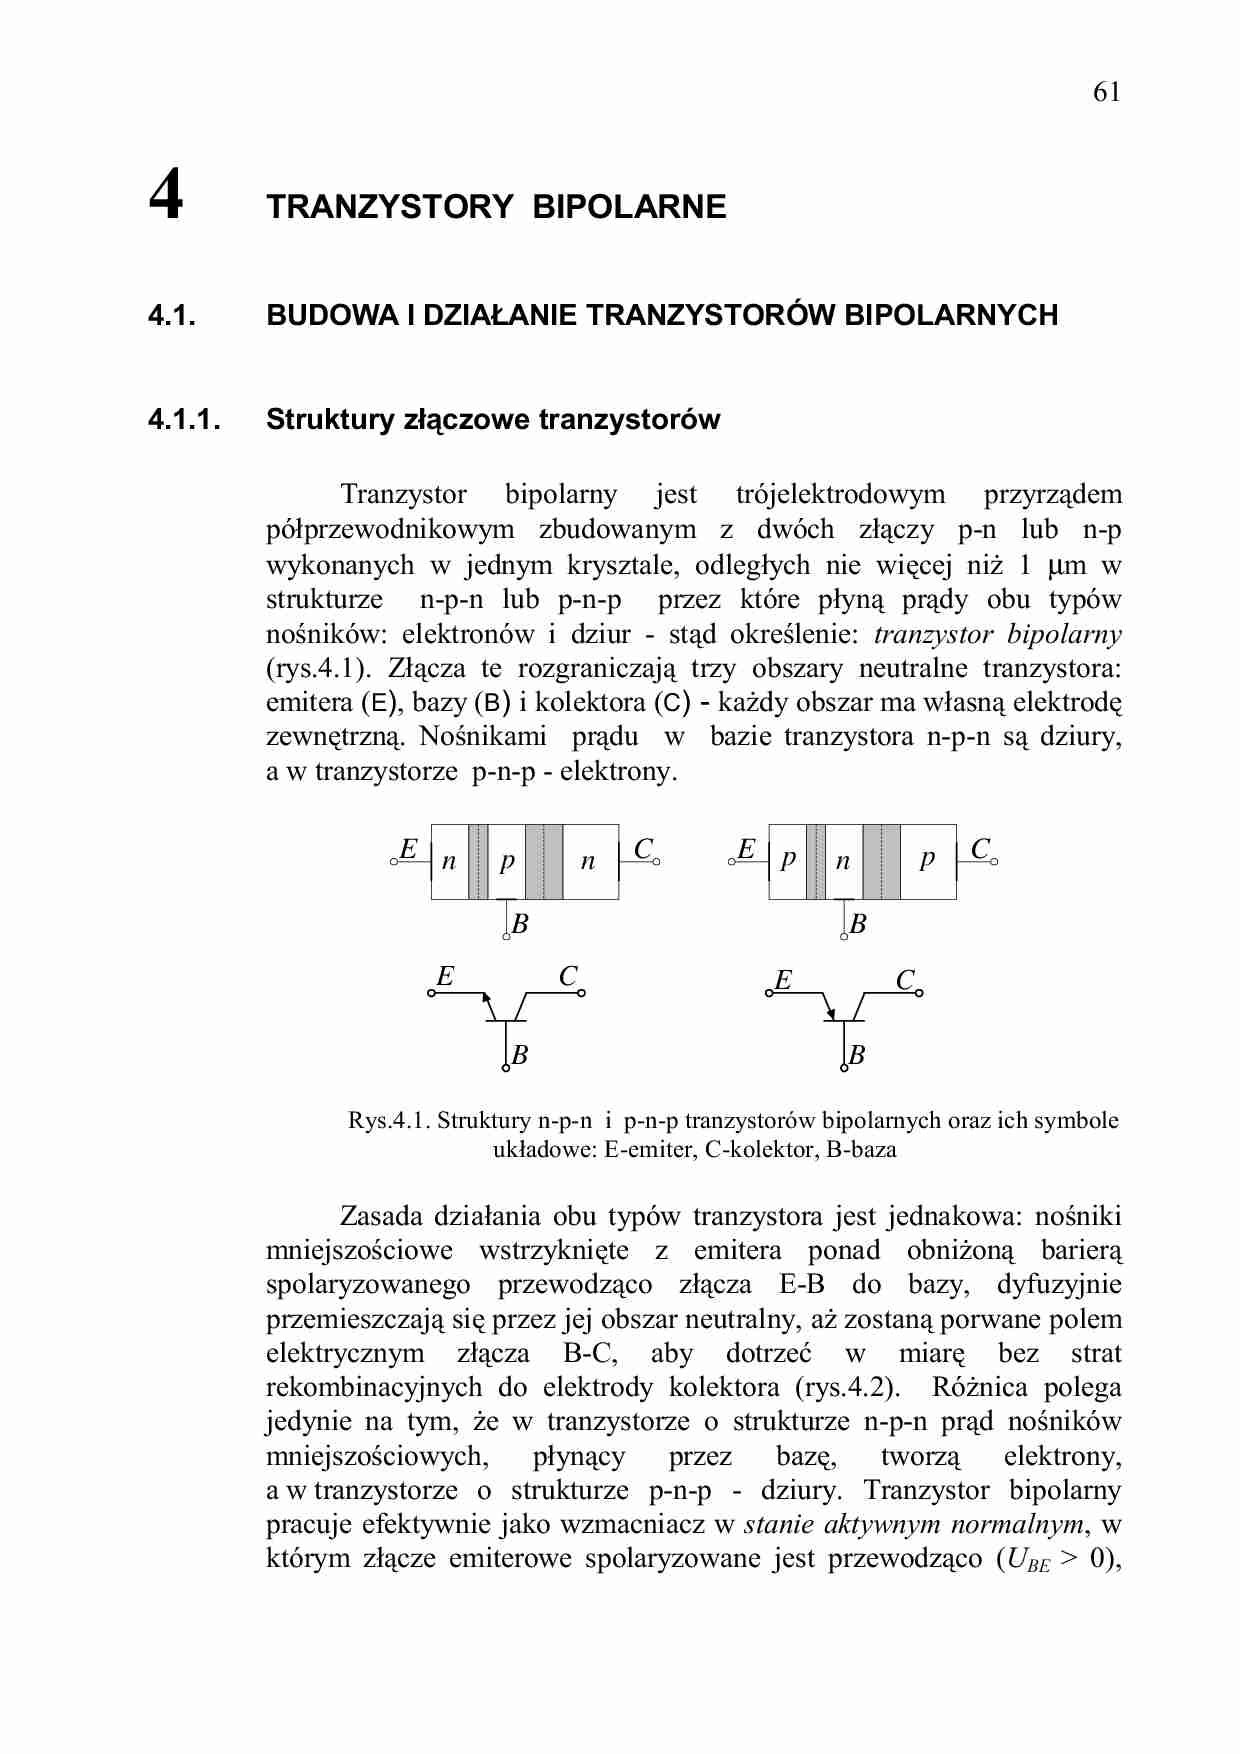 Tranzystory Bipolarne - wykład - strona 1